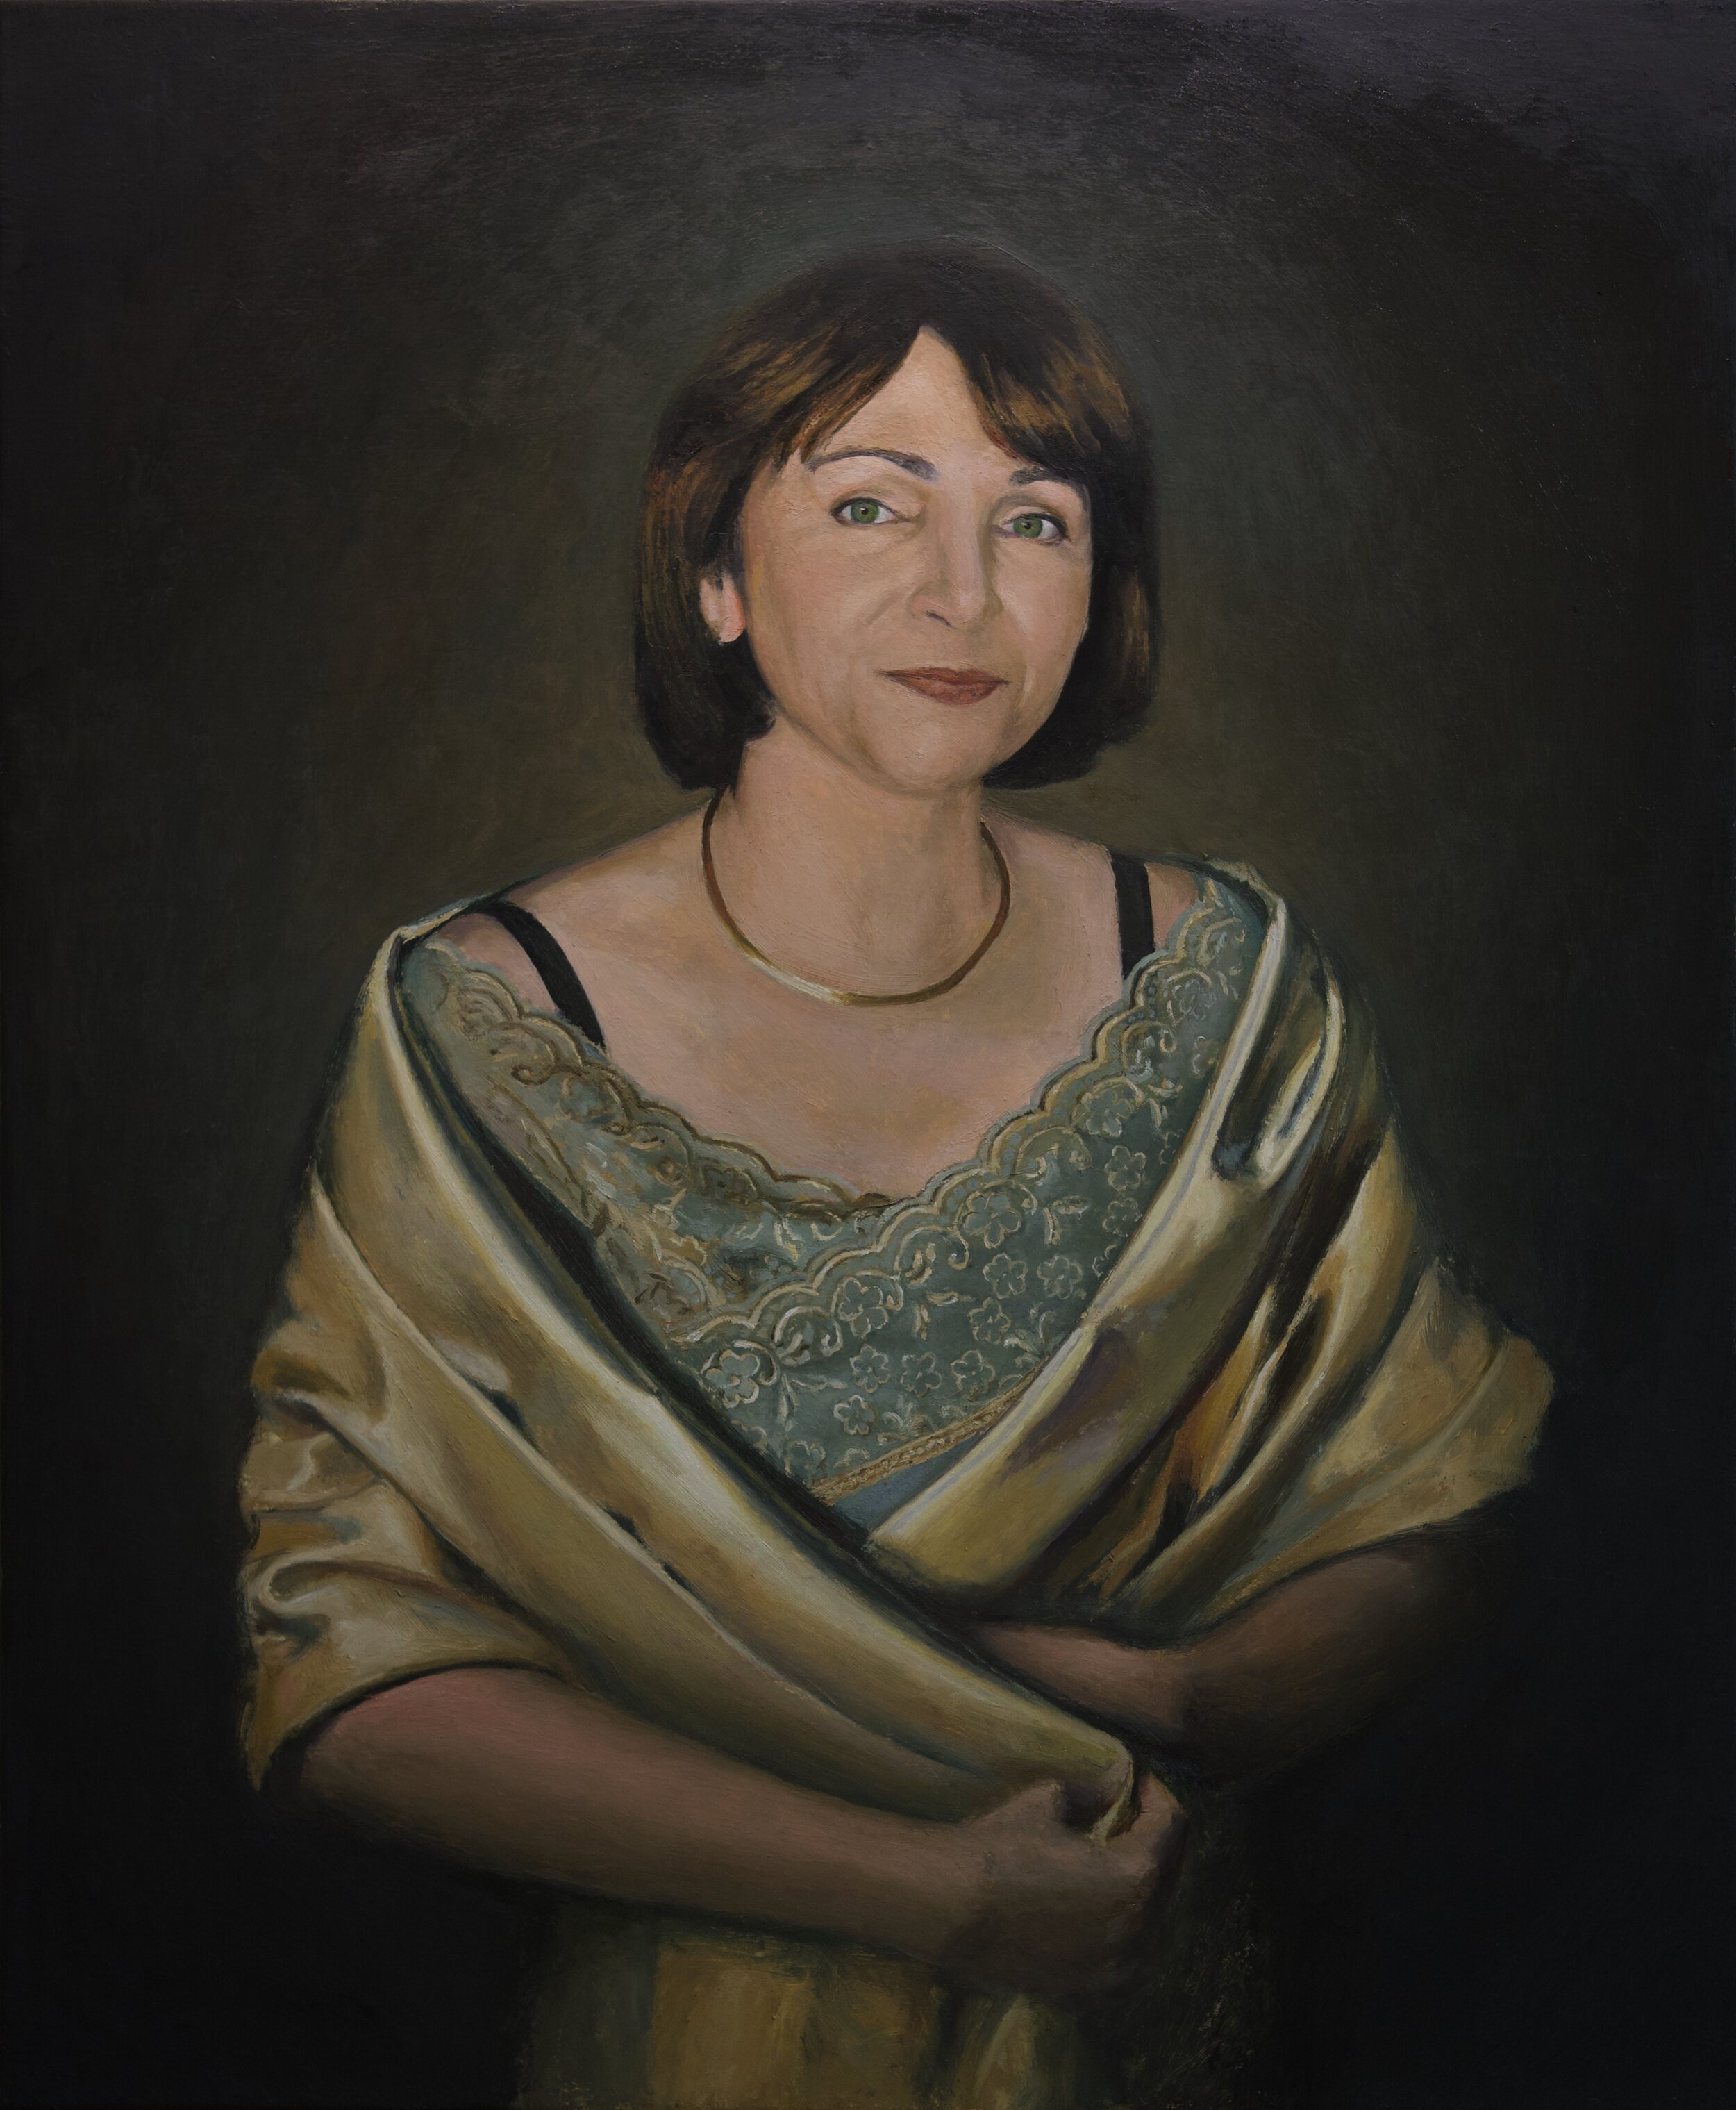 Commission portrait